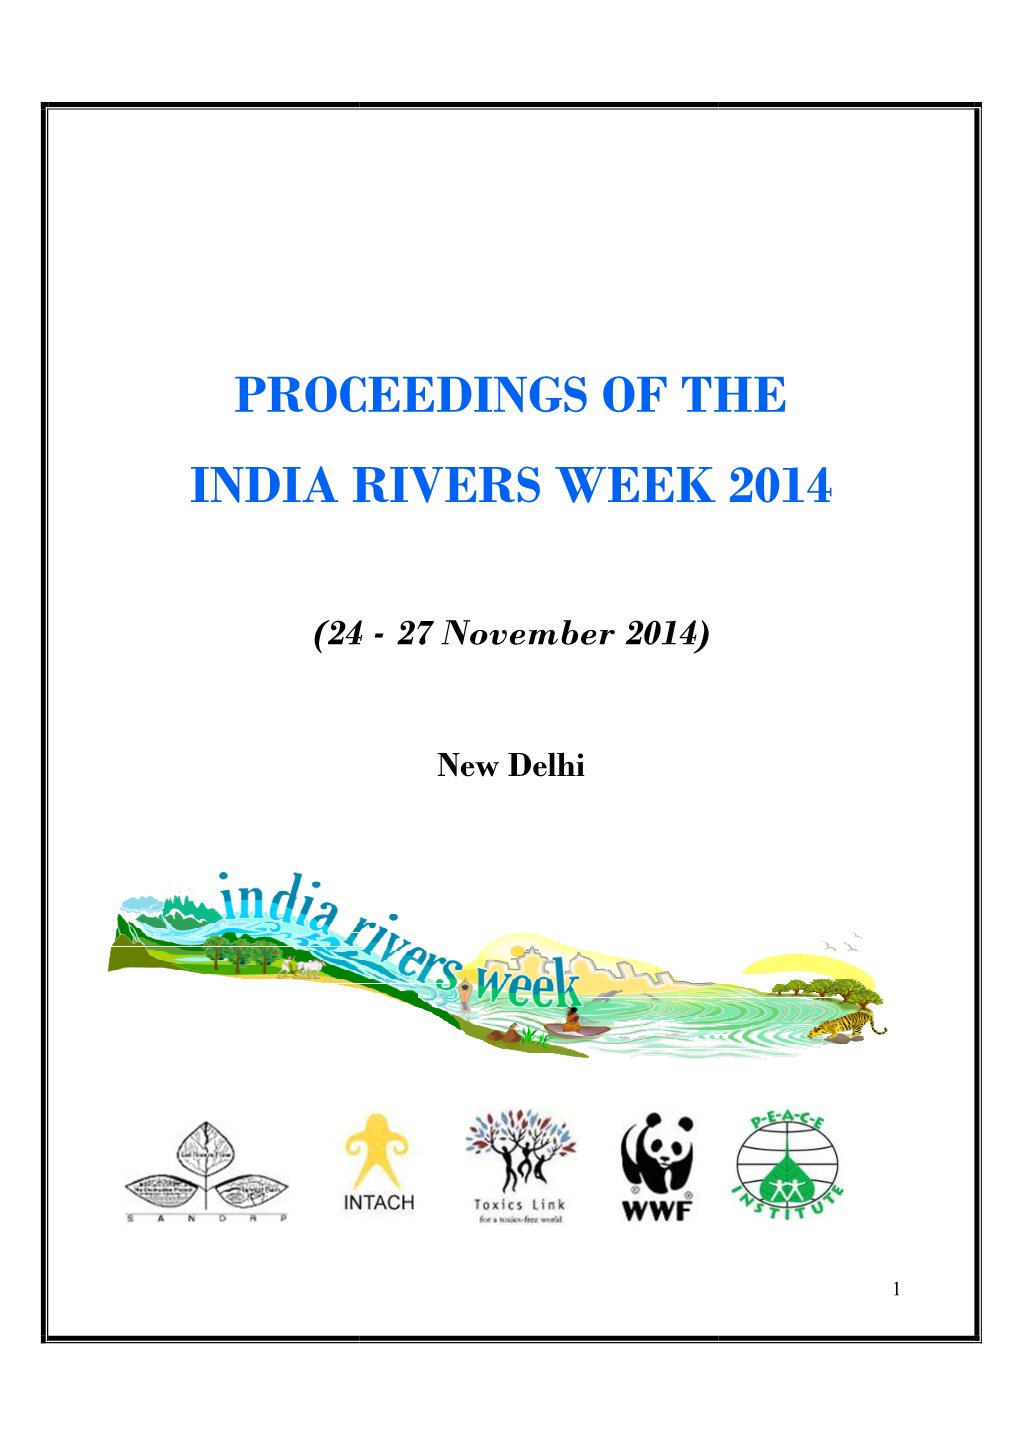 India Rivers Week Proceedings